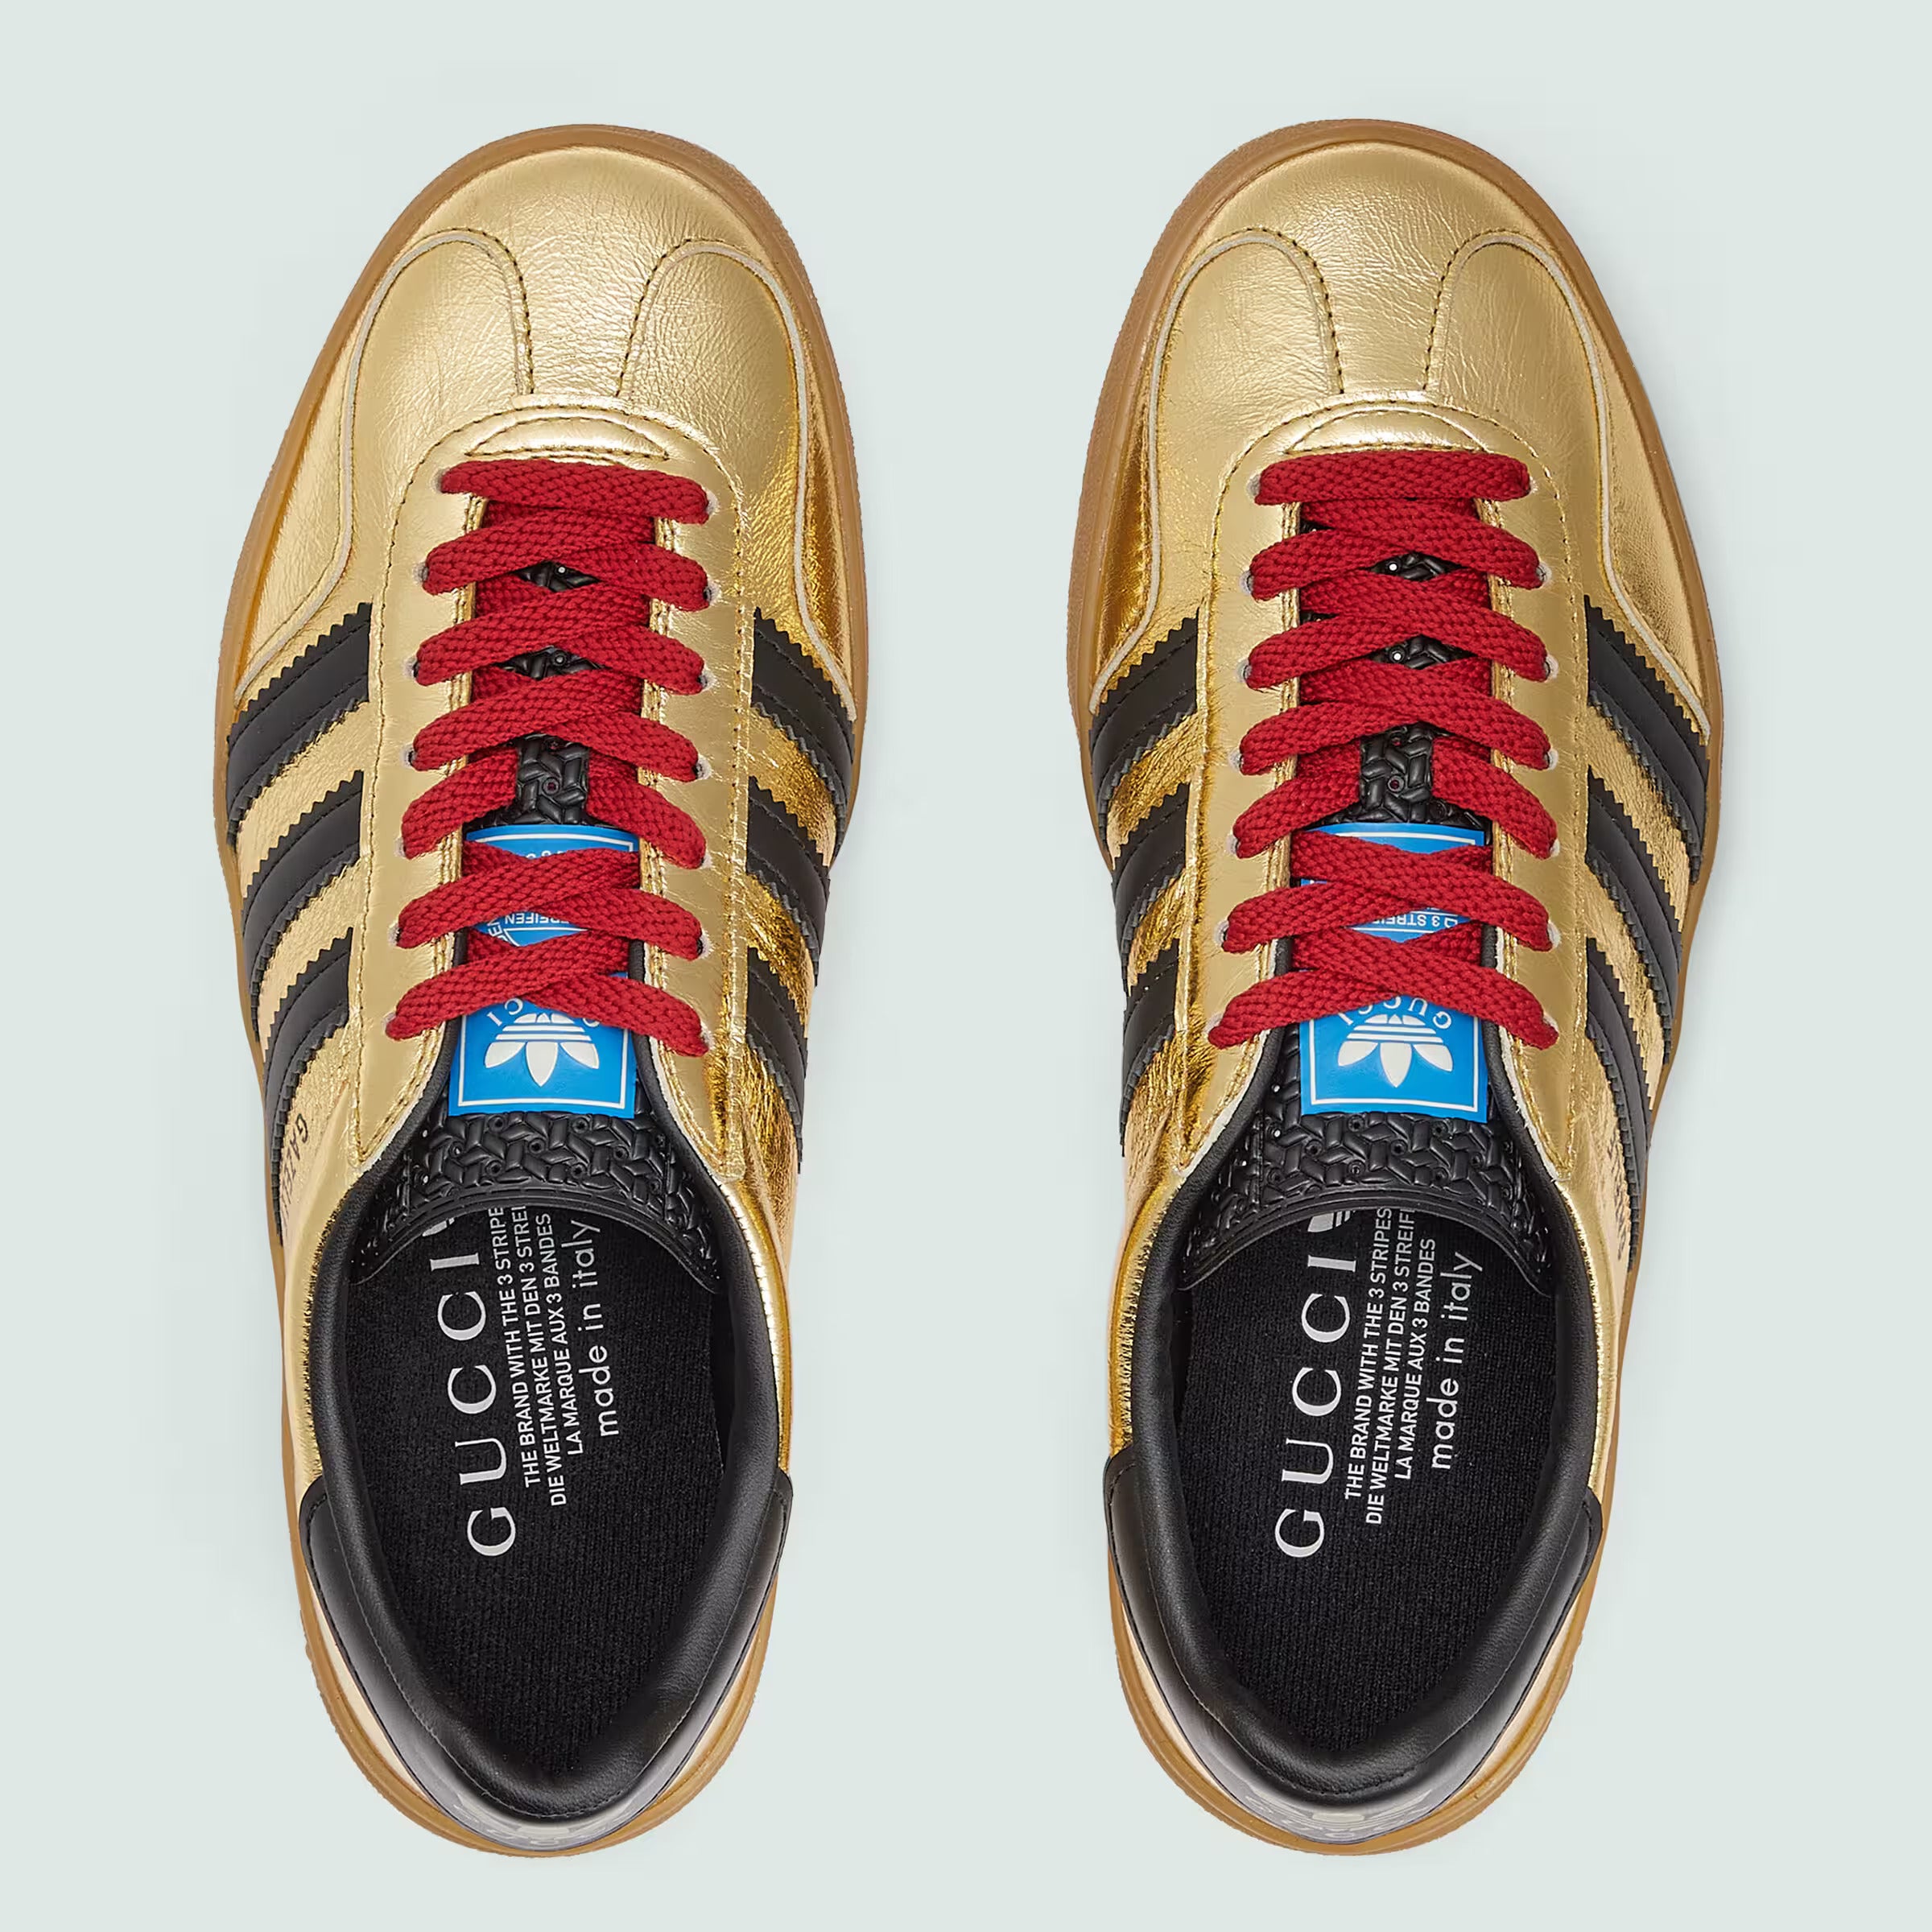 Adidas x Gucci Gazelle Gold